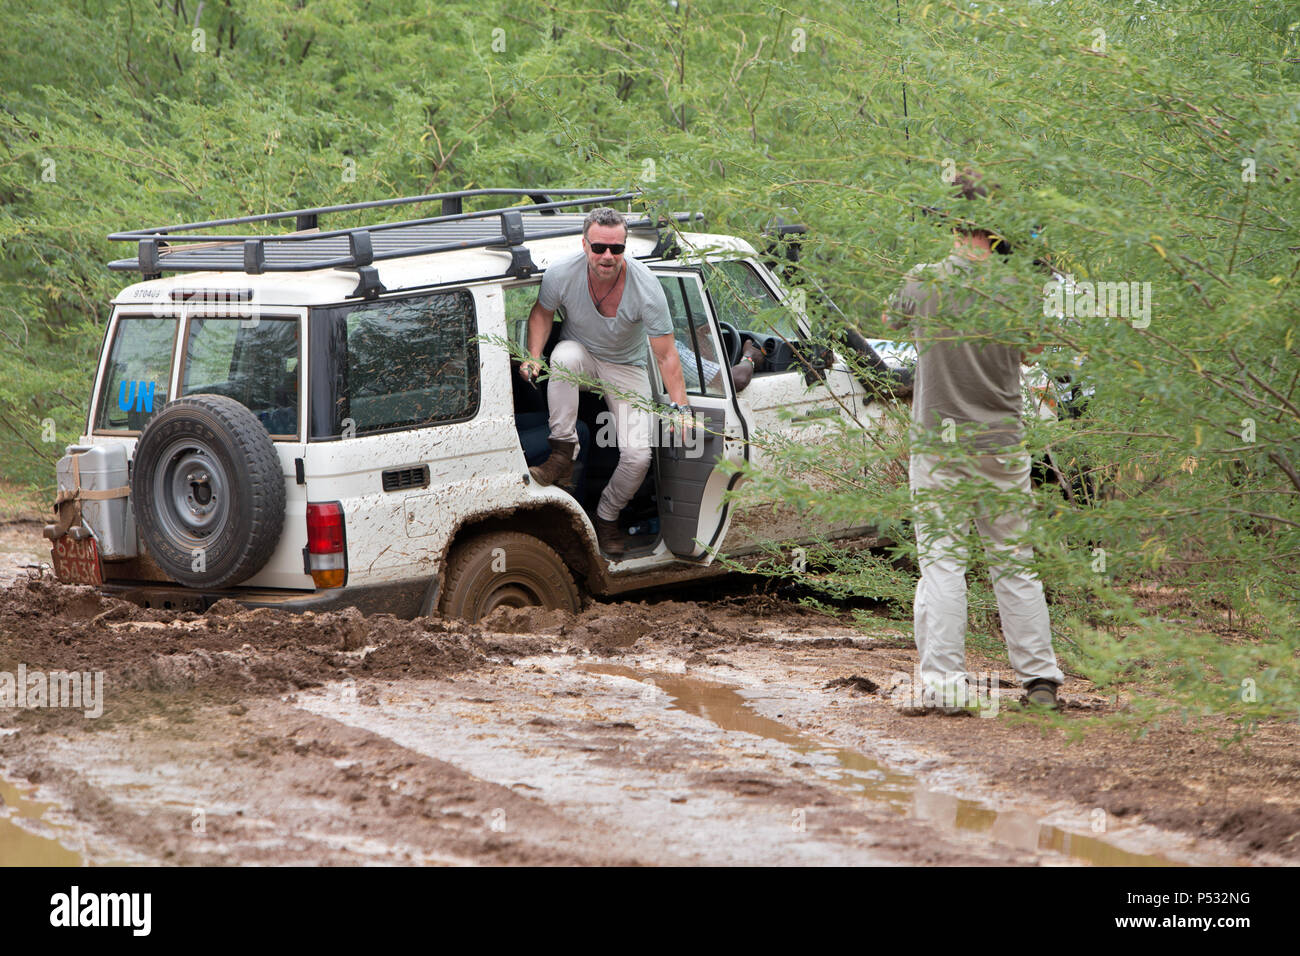 KAKUMA, KENYA - A UN Land Rover has got stuck on a dirt road deep in the mud. Stock Photo